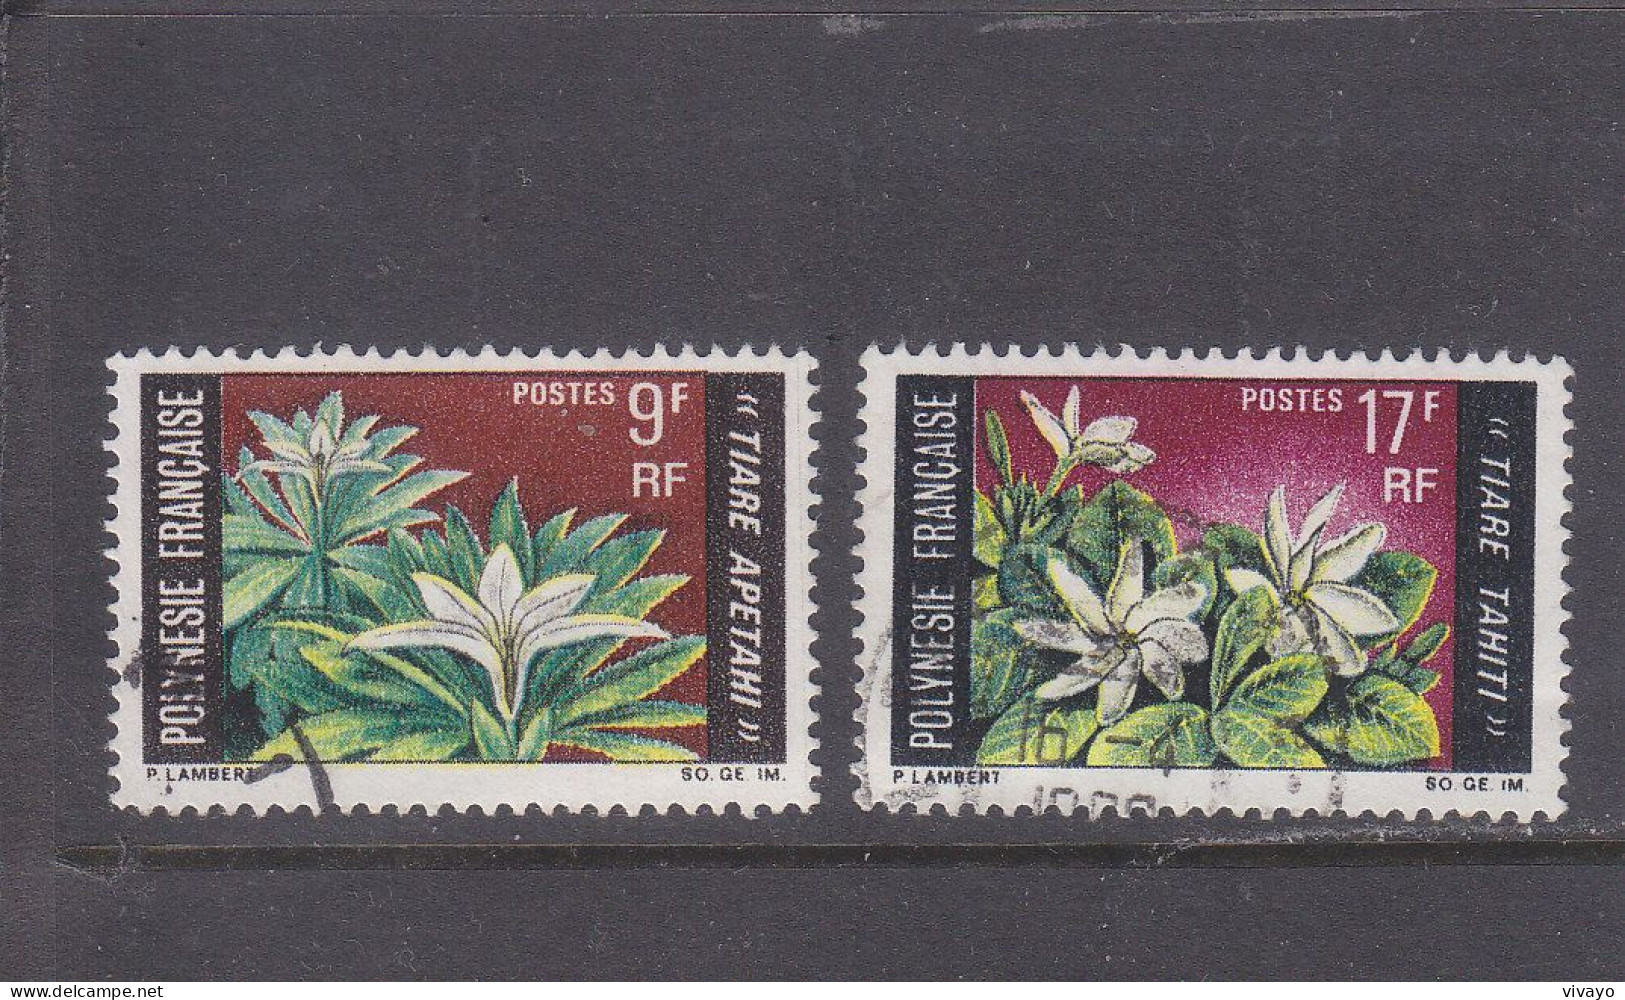 FRENCH POLYNESIA - POLYNESIE FRAN. - O / FINE CANCELLED - 1969 - LOCAL FLOWERS - Yv. 64/65  - Mi. 90/91 - Gebruikt